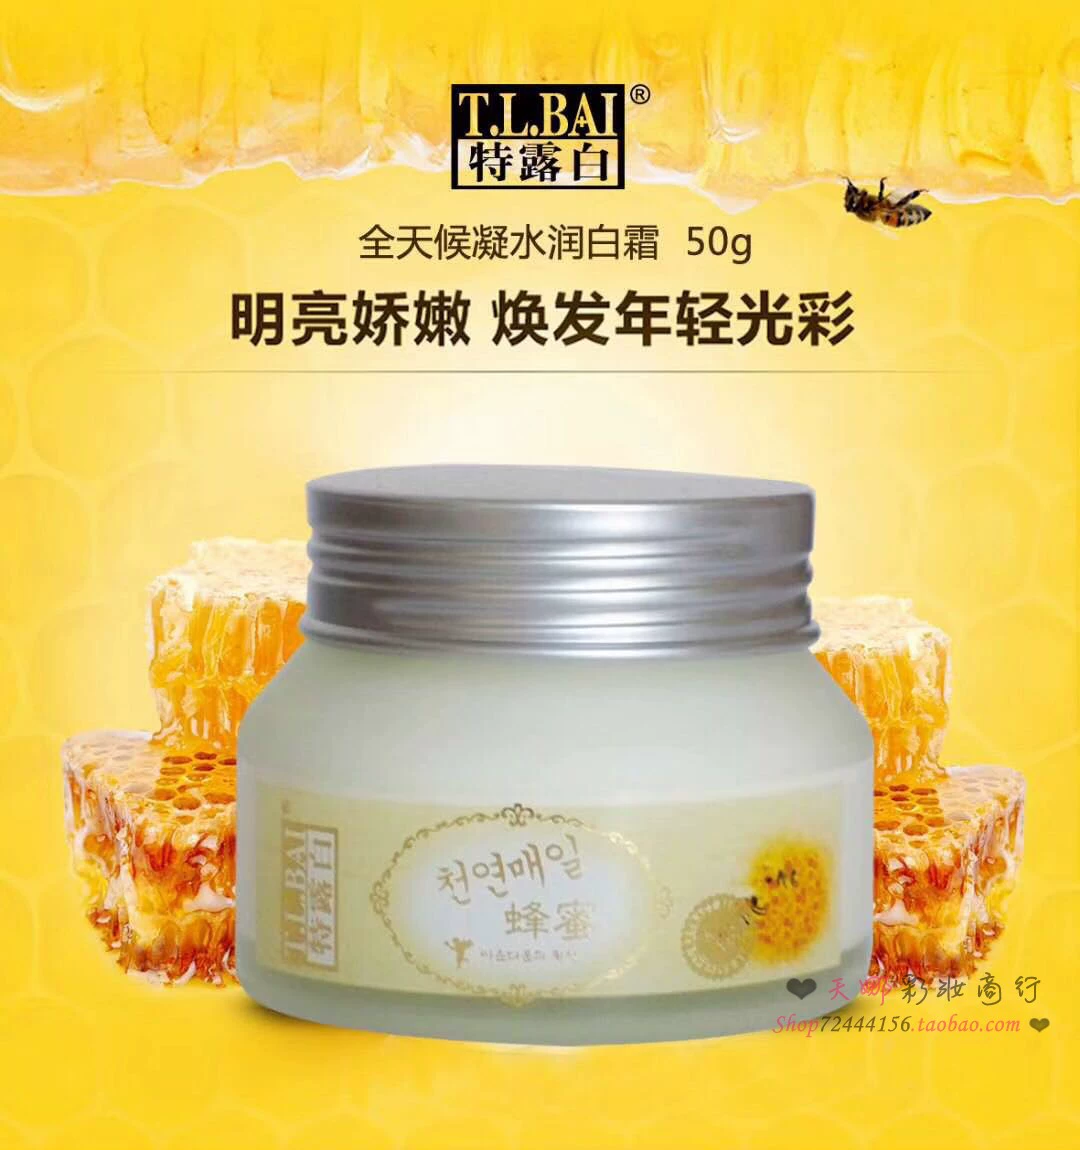 Telubai honey skin care cream honey all-weather gel kem dưỡng ẩm trắng da cho nam và nữ kem face trong suốt 50g mua 1 tặng 1 - Kem dưỡng da